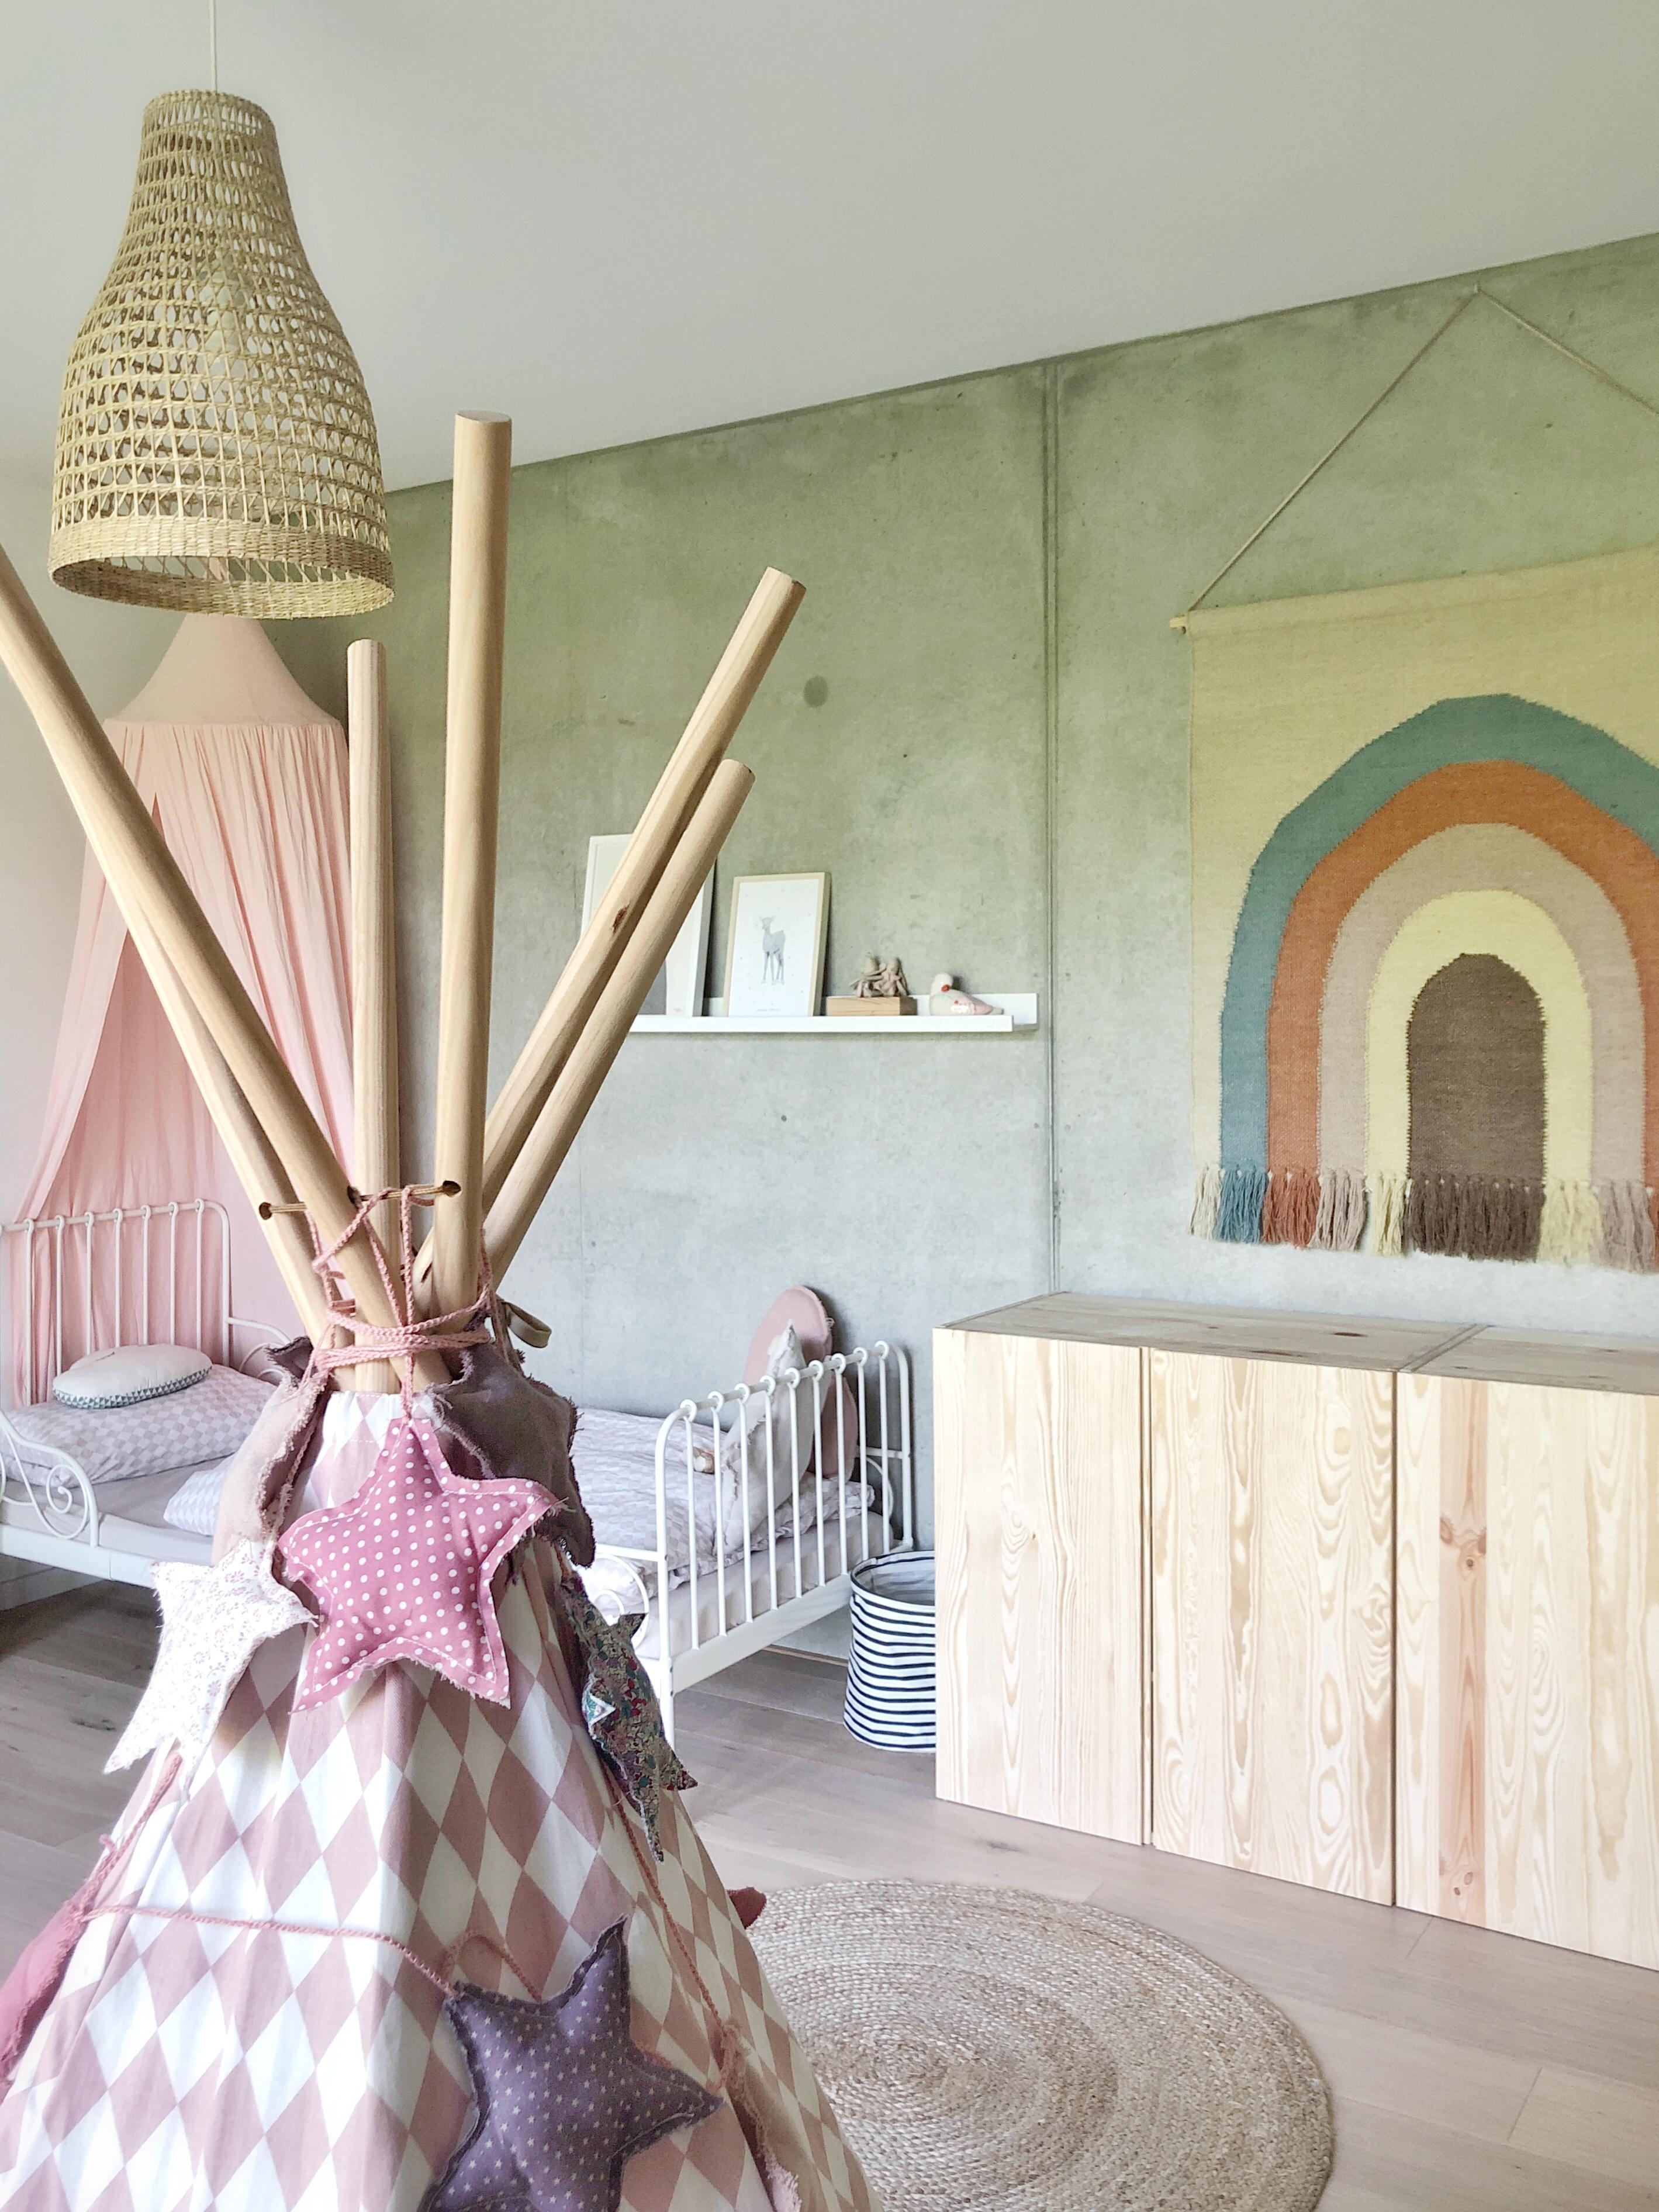 Update für das Zimmer der Jüngsten!
#kinderzimmer#kidsroom#ikea#betonwand#sichtbeton